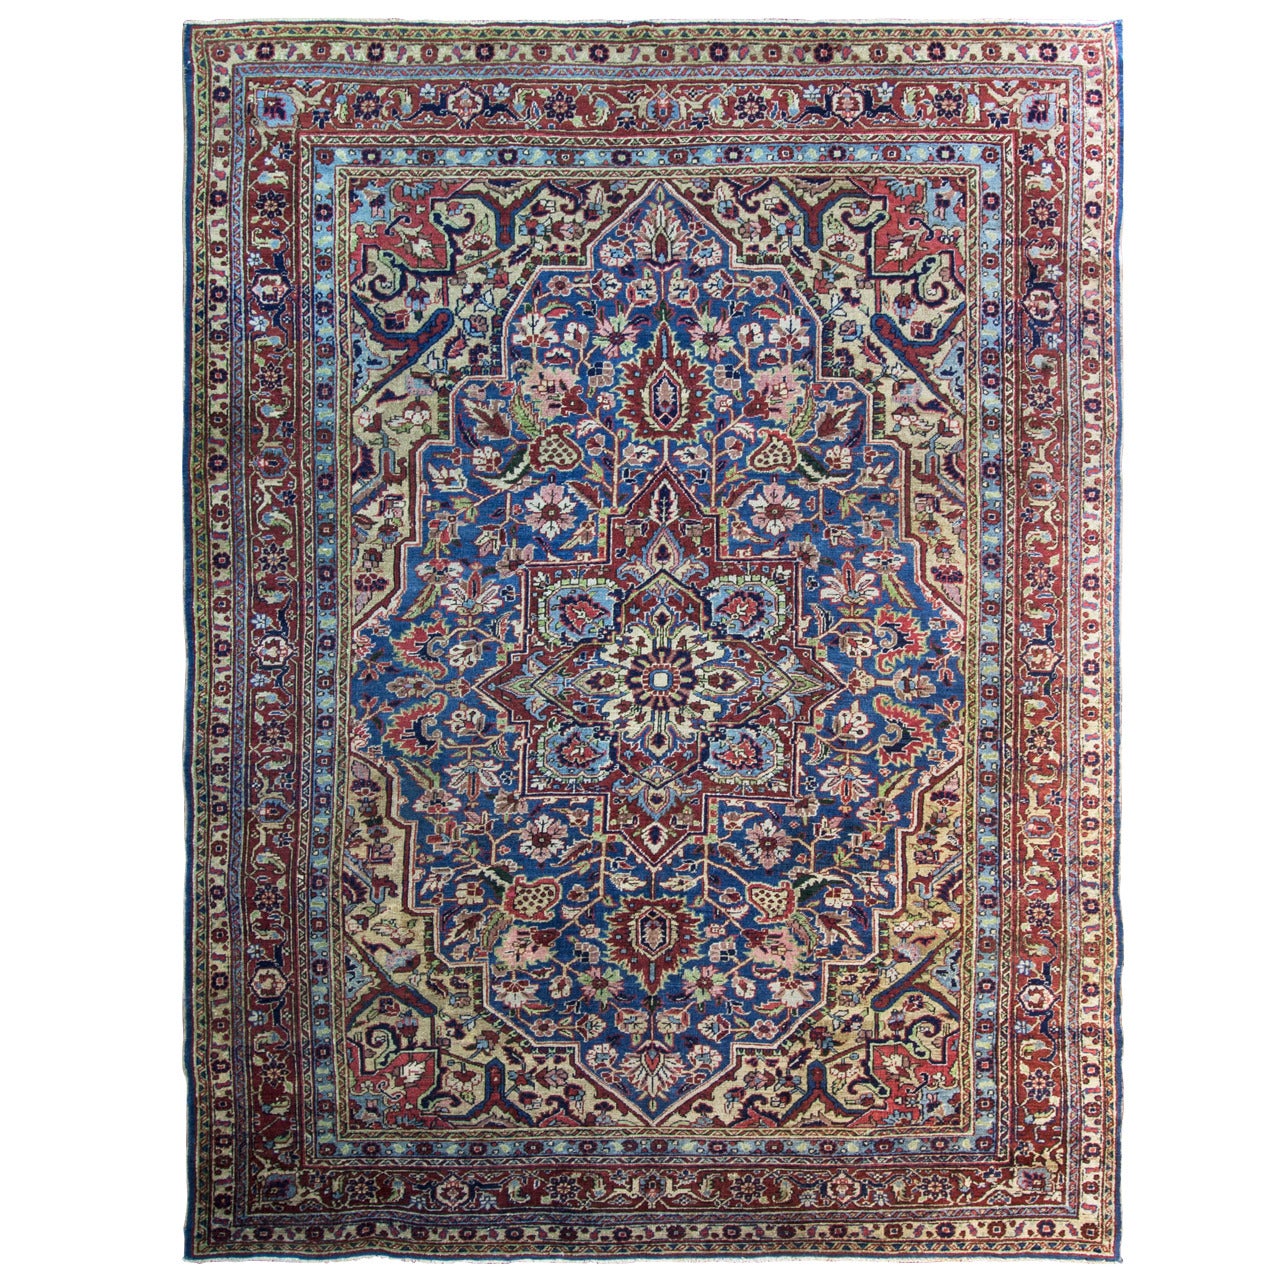 Antique Persian Heriz Carpet, Blue Color, 8'5" x 11'